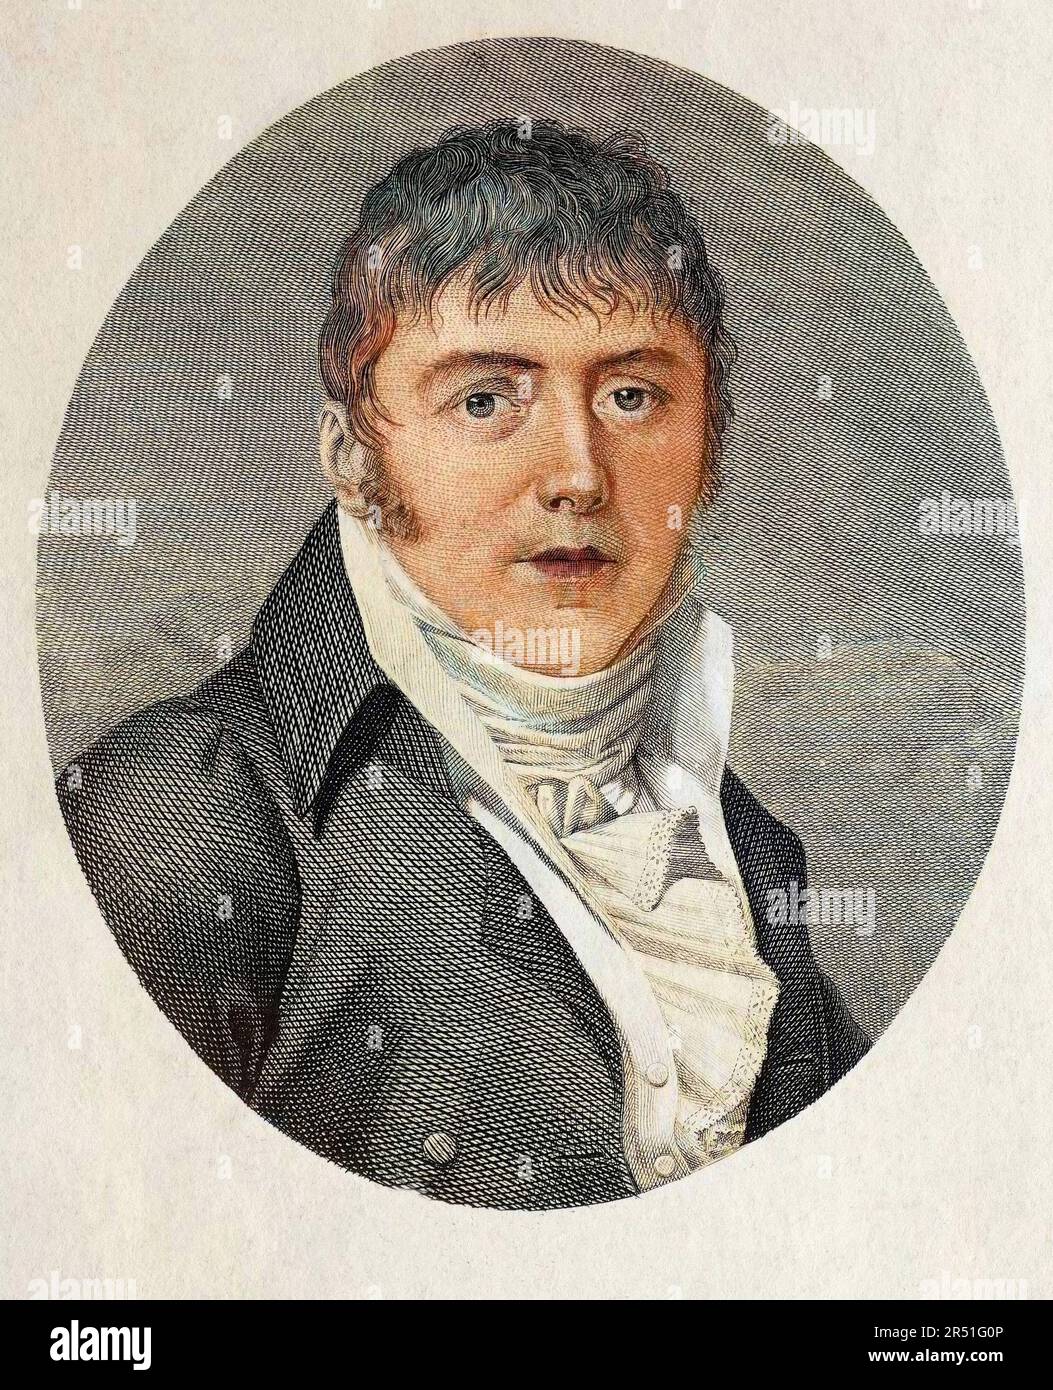 Portrait de Johann Simon ou Giovanni Simone Mayr (1763 - 1845), compositeur d'origine allemande. Foto Stock